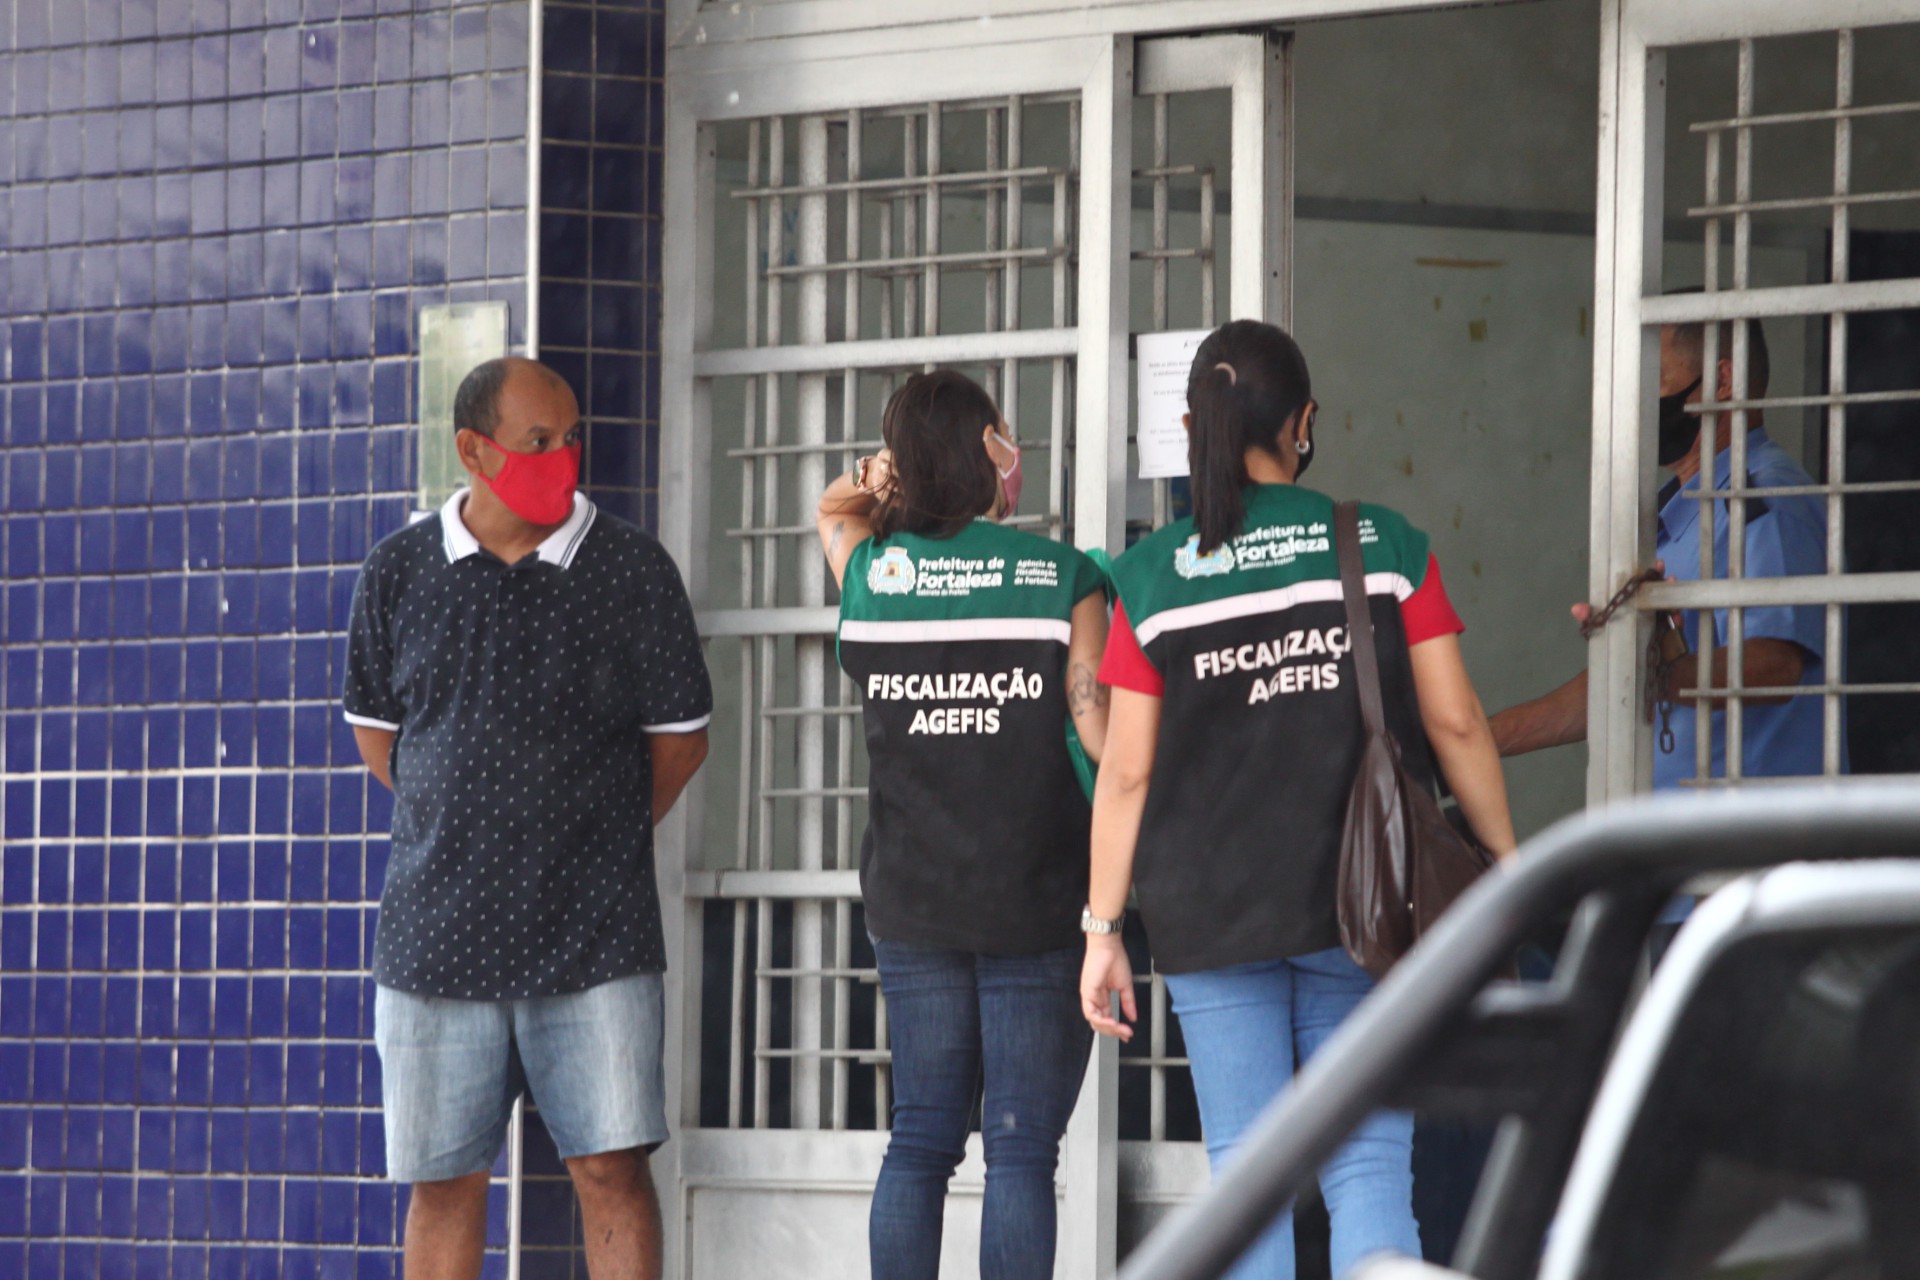 FORTALEZA,CE, BRASIL, 23.03.2021: Fiscalização da Agefis verifica denuncias em estabelecimentos de ensino e mercantil durante lockdown.  (Fotos: Fabio Lima/O POVO).